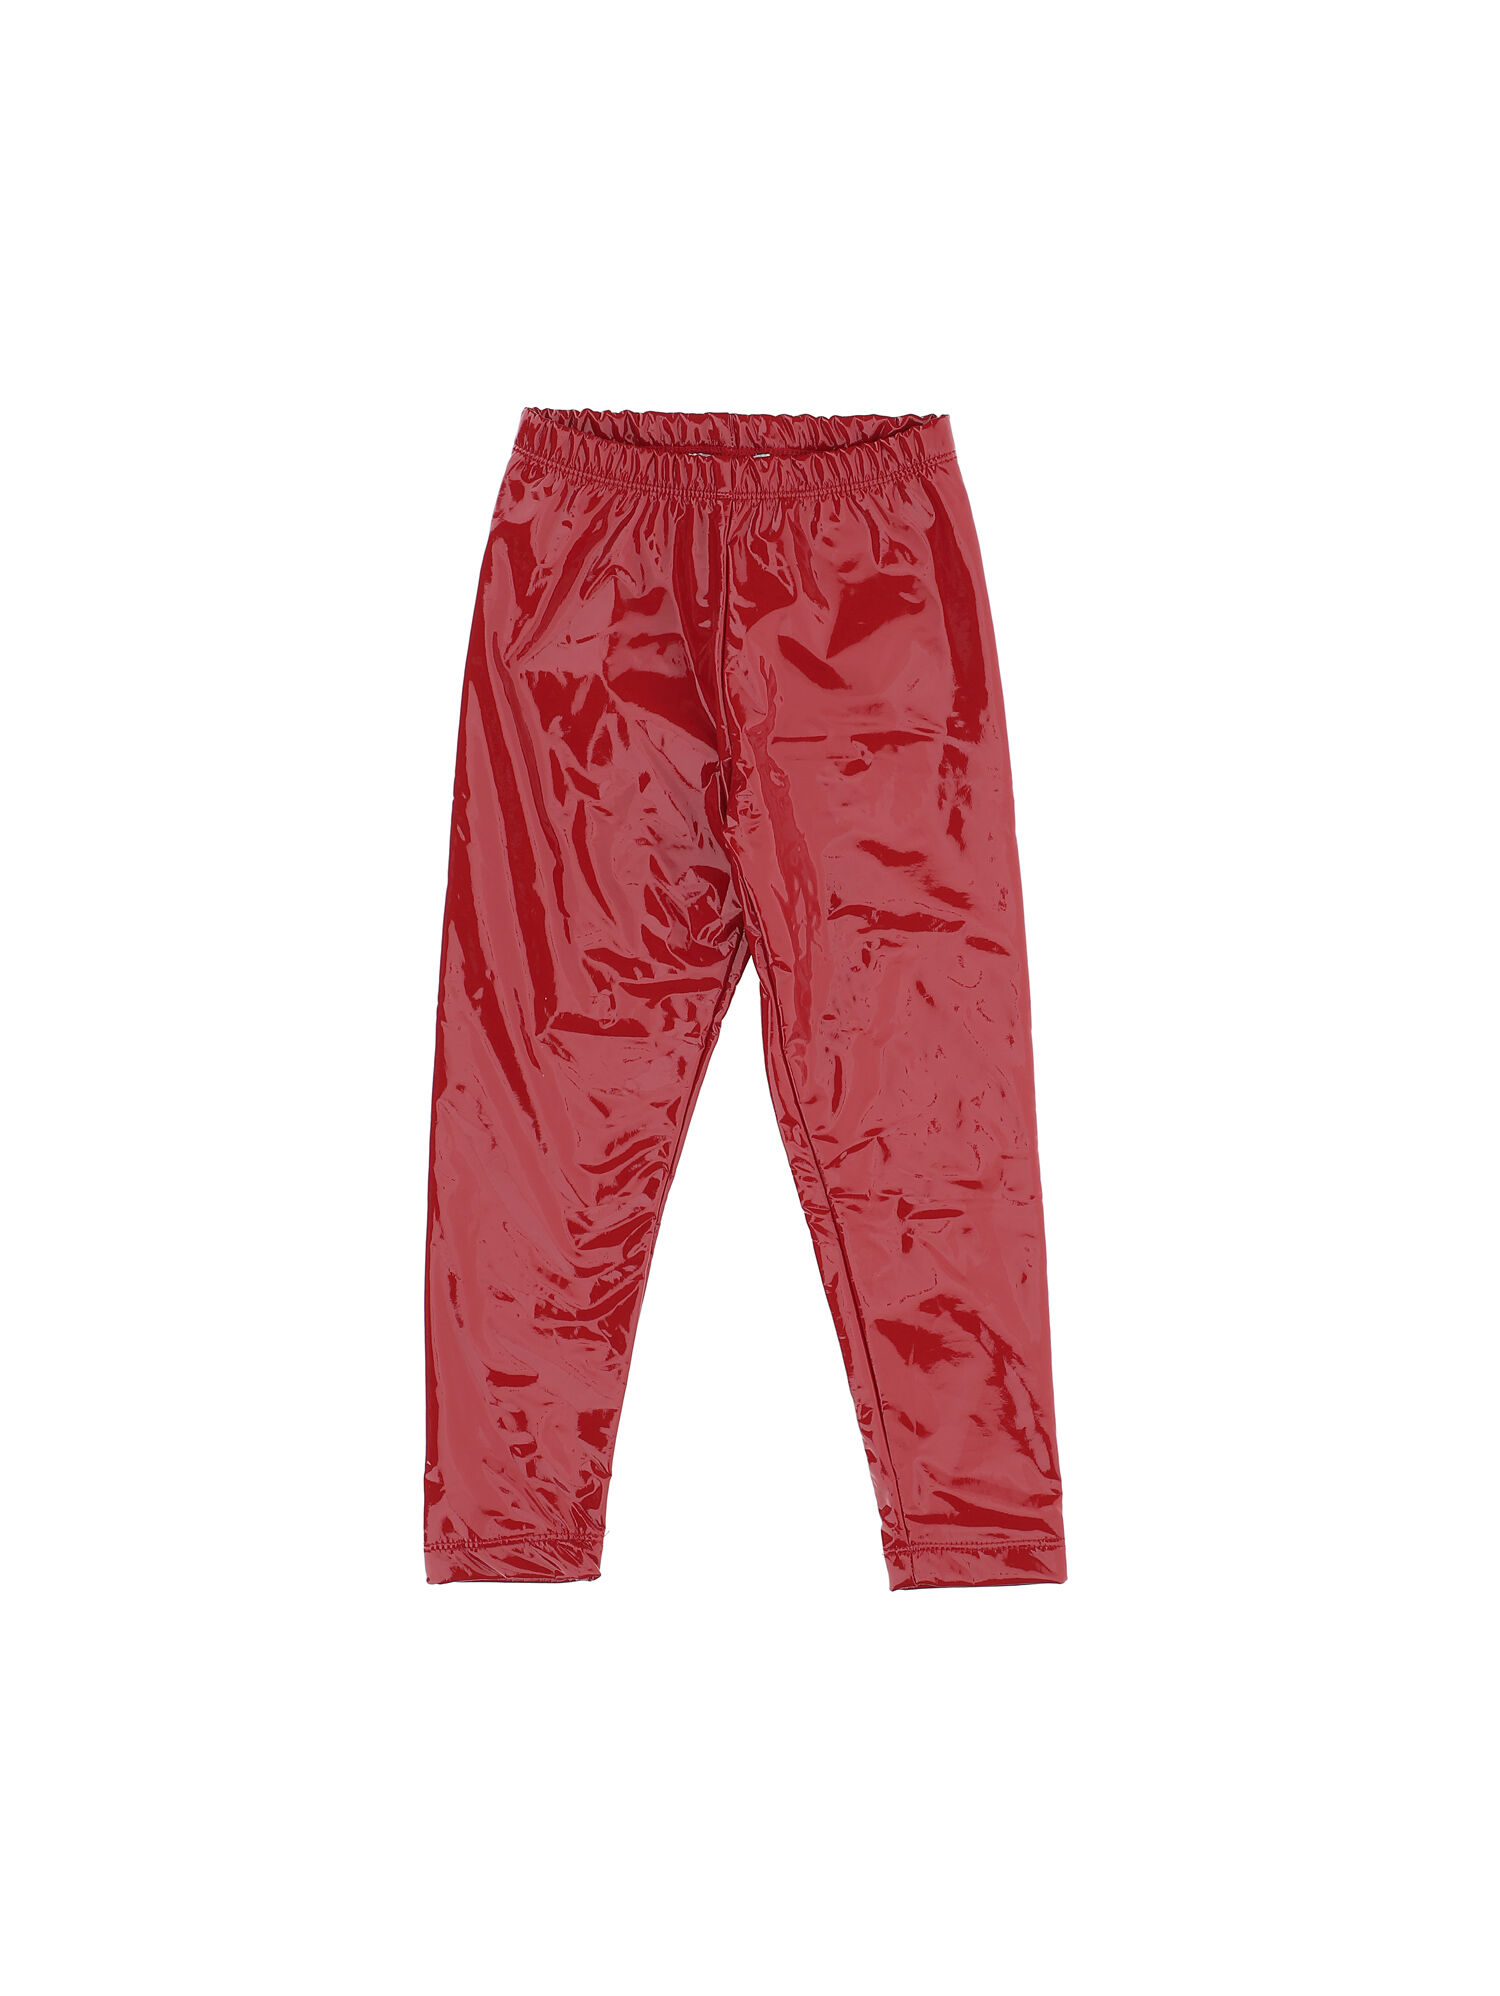 Yoga pants technical fabric Monnalisa Girls Sport & Swimwear Sportswear Sports Pants 